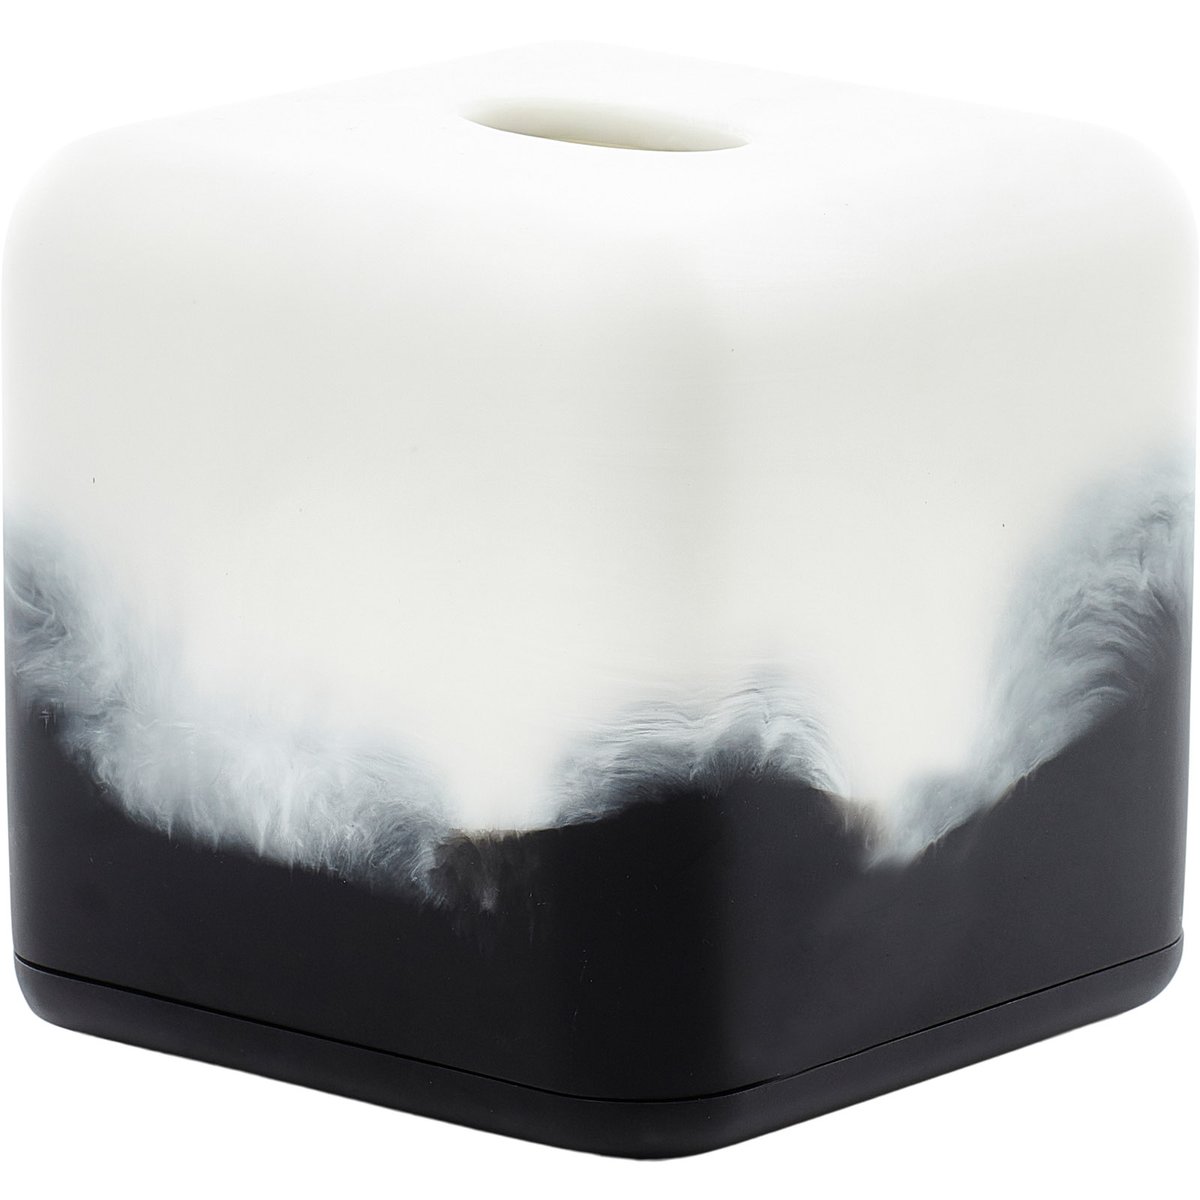 Mist Tissue Box, Black & White